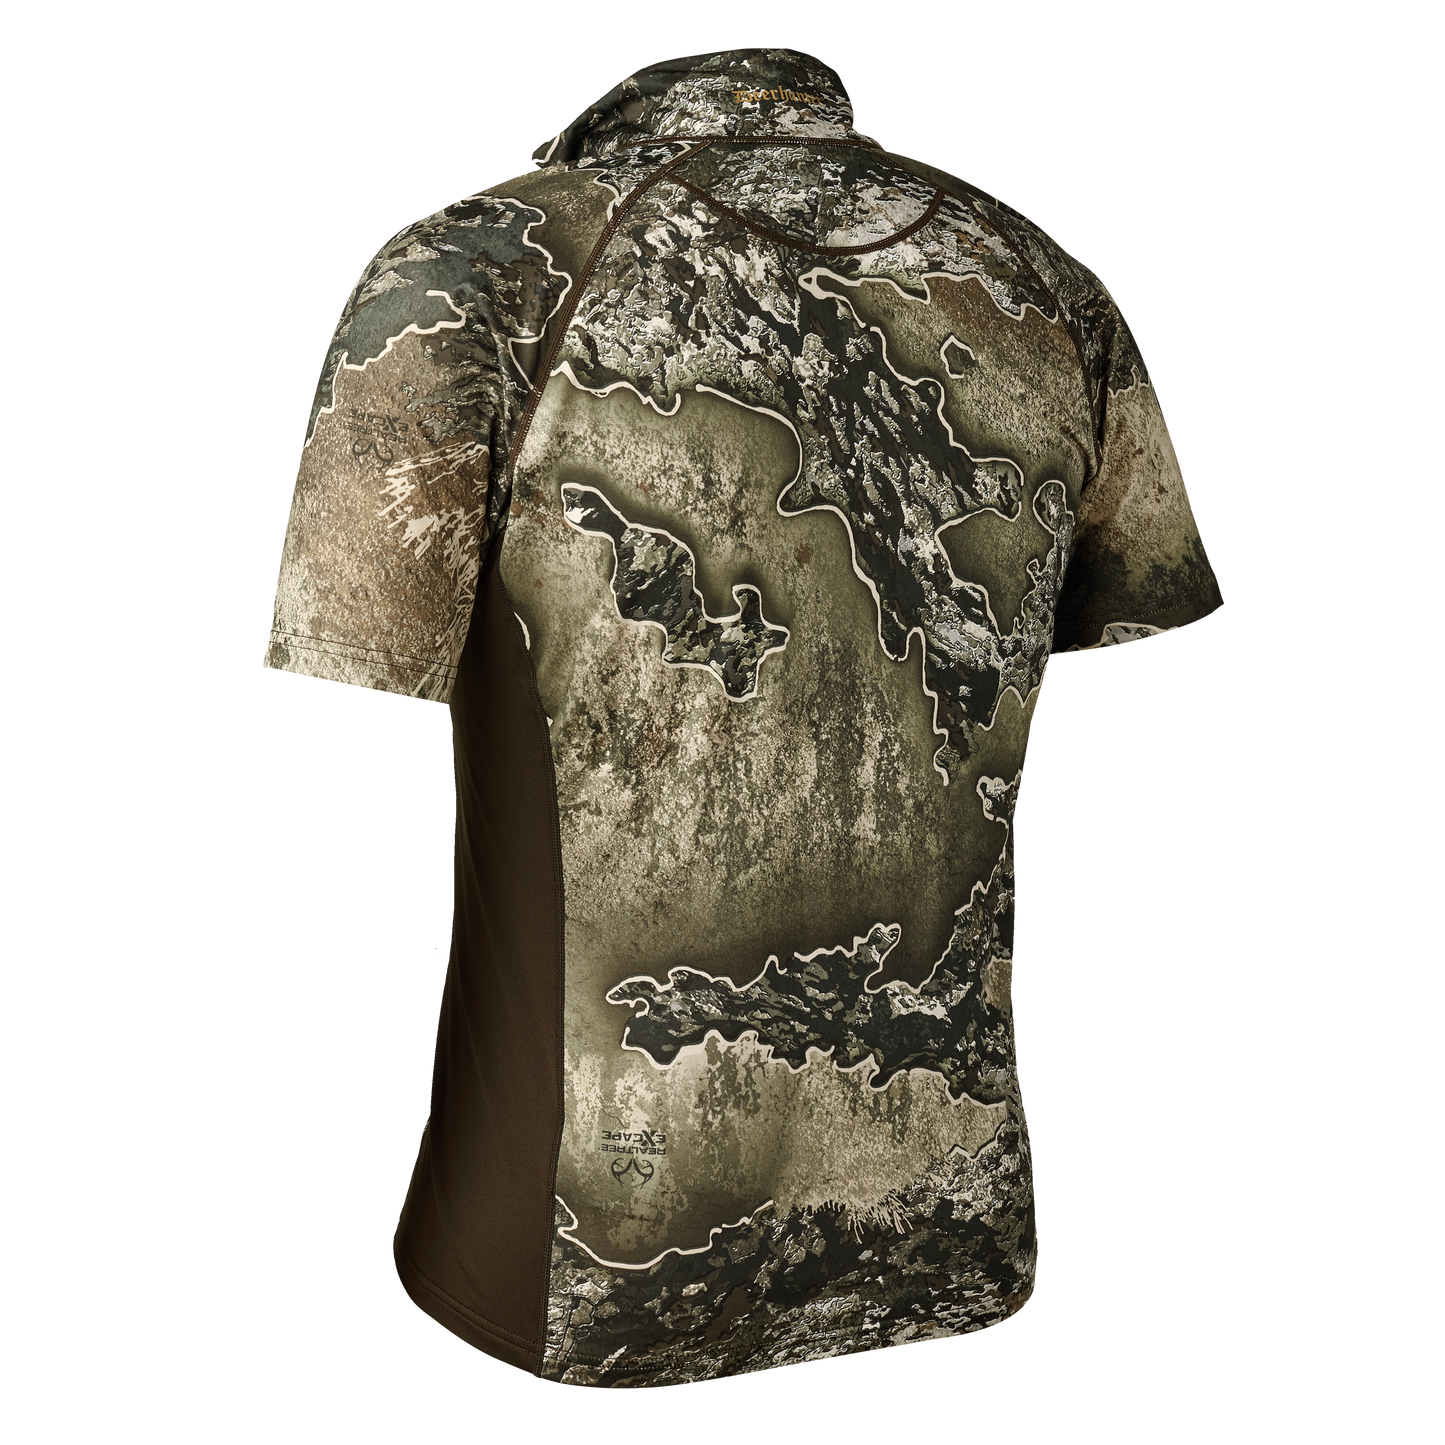 Excape Insulated T-Shirt mit RV-Kragen